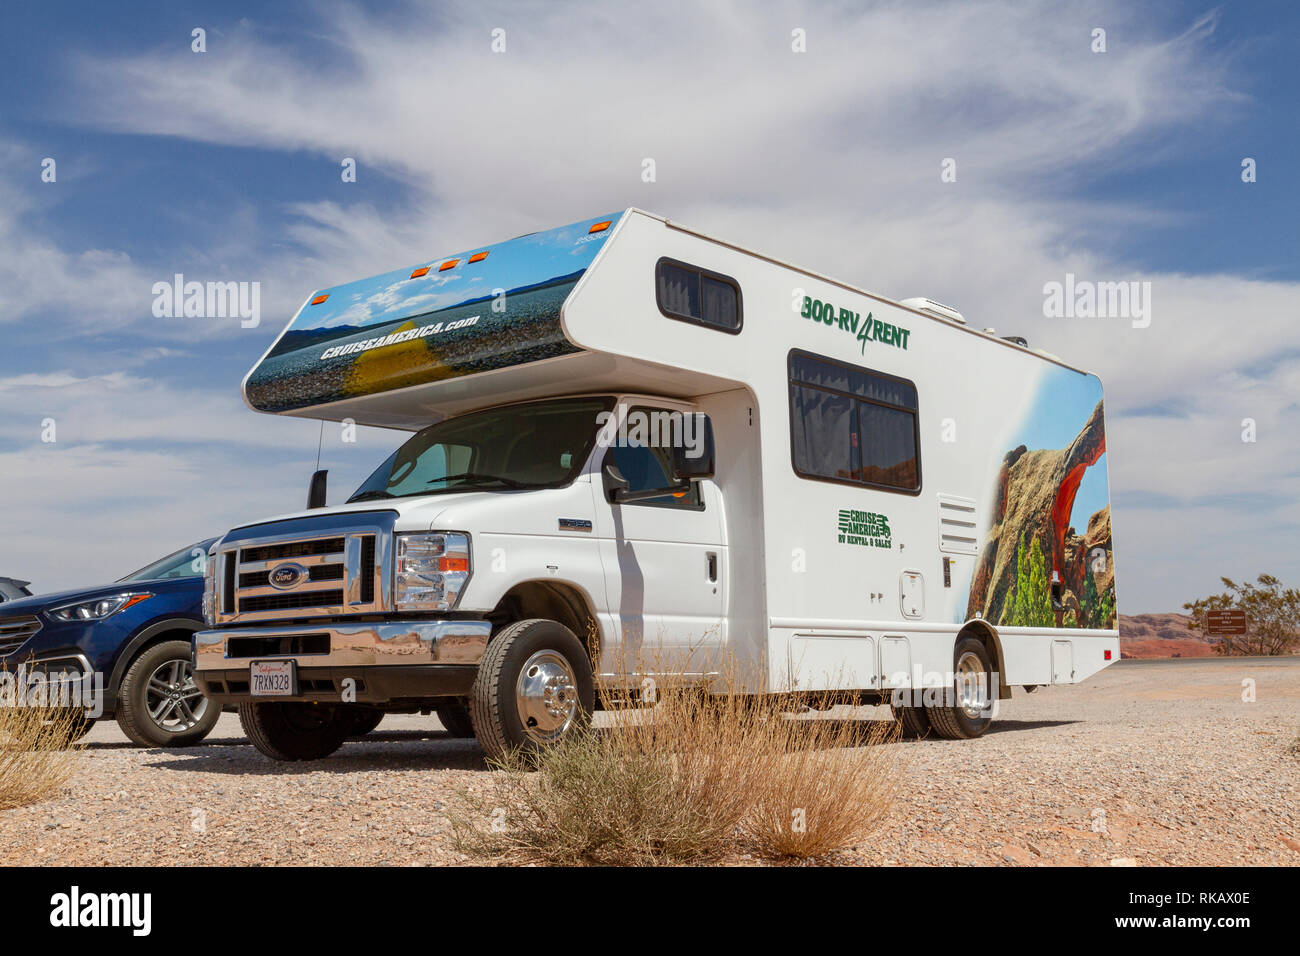 Une croisière Nord Ford RV camping-van garé dans le parc national de la Vallée de Feu, Nevada, United States. Banque D'Images